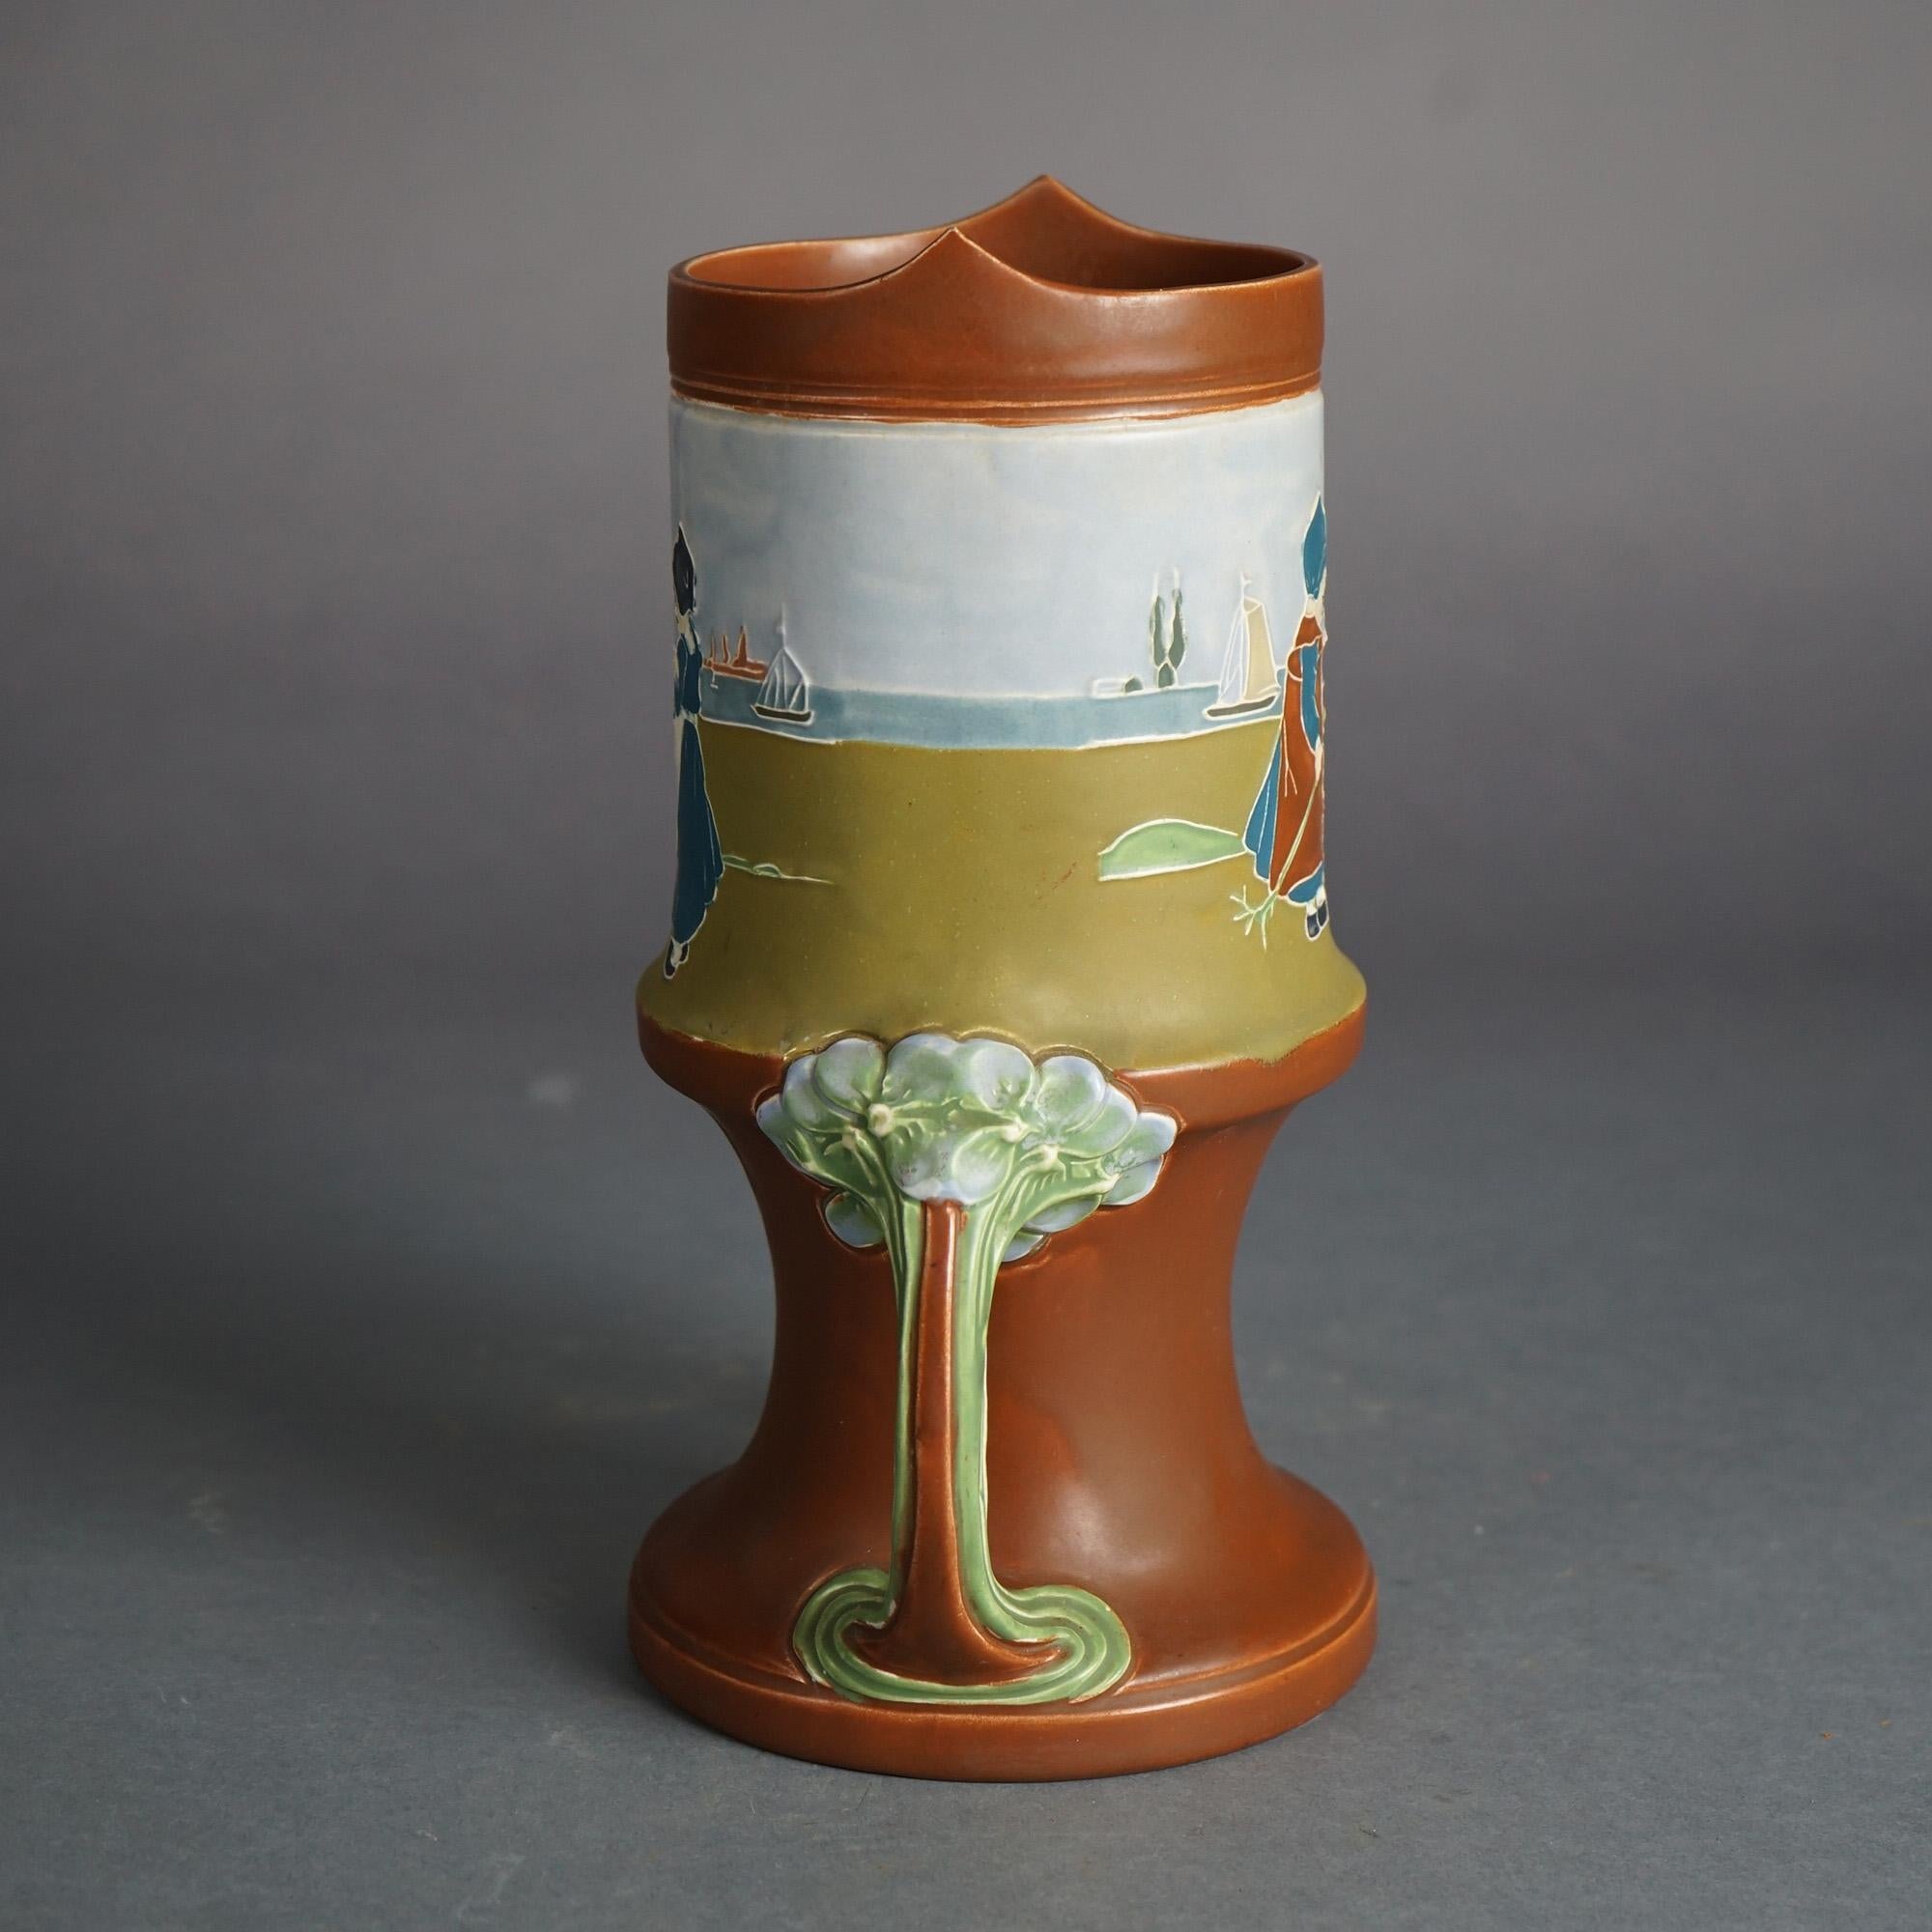 Antique Art Nouveau Austrian Amphora Embossed Figural & Double Handled Pottery Vase with Dancing Dutch Girls C1910

Measures - 10